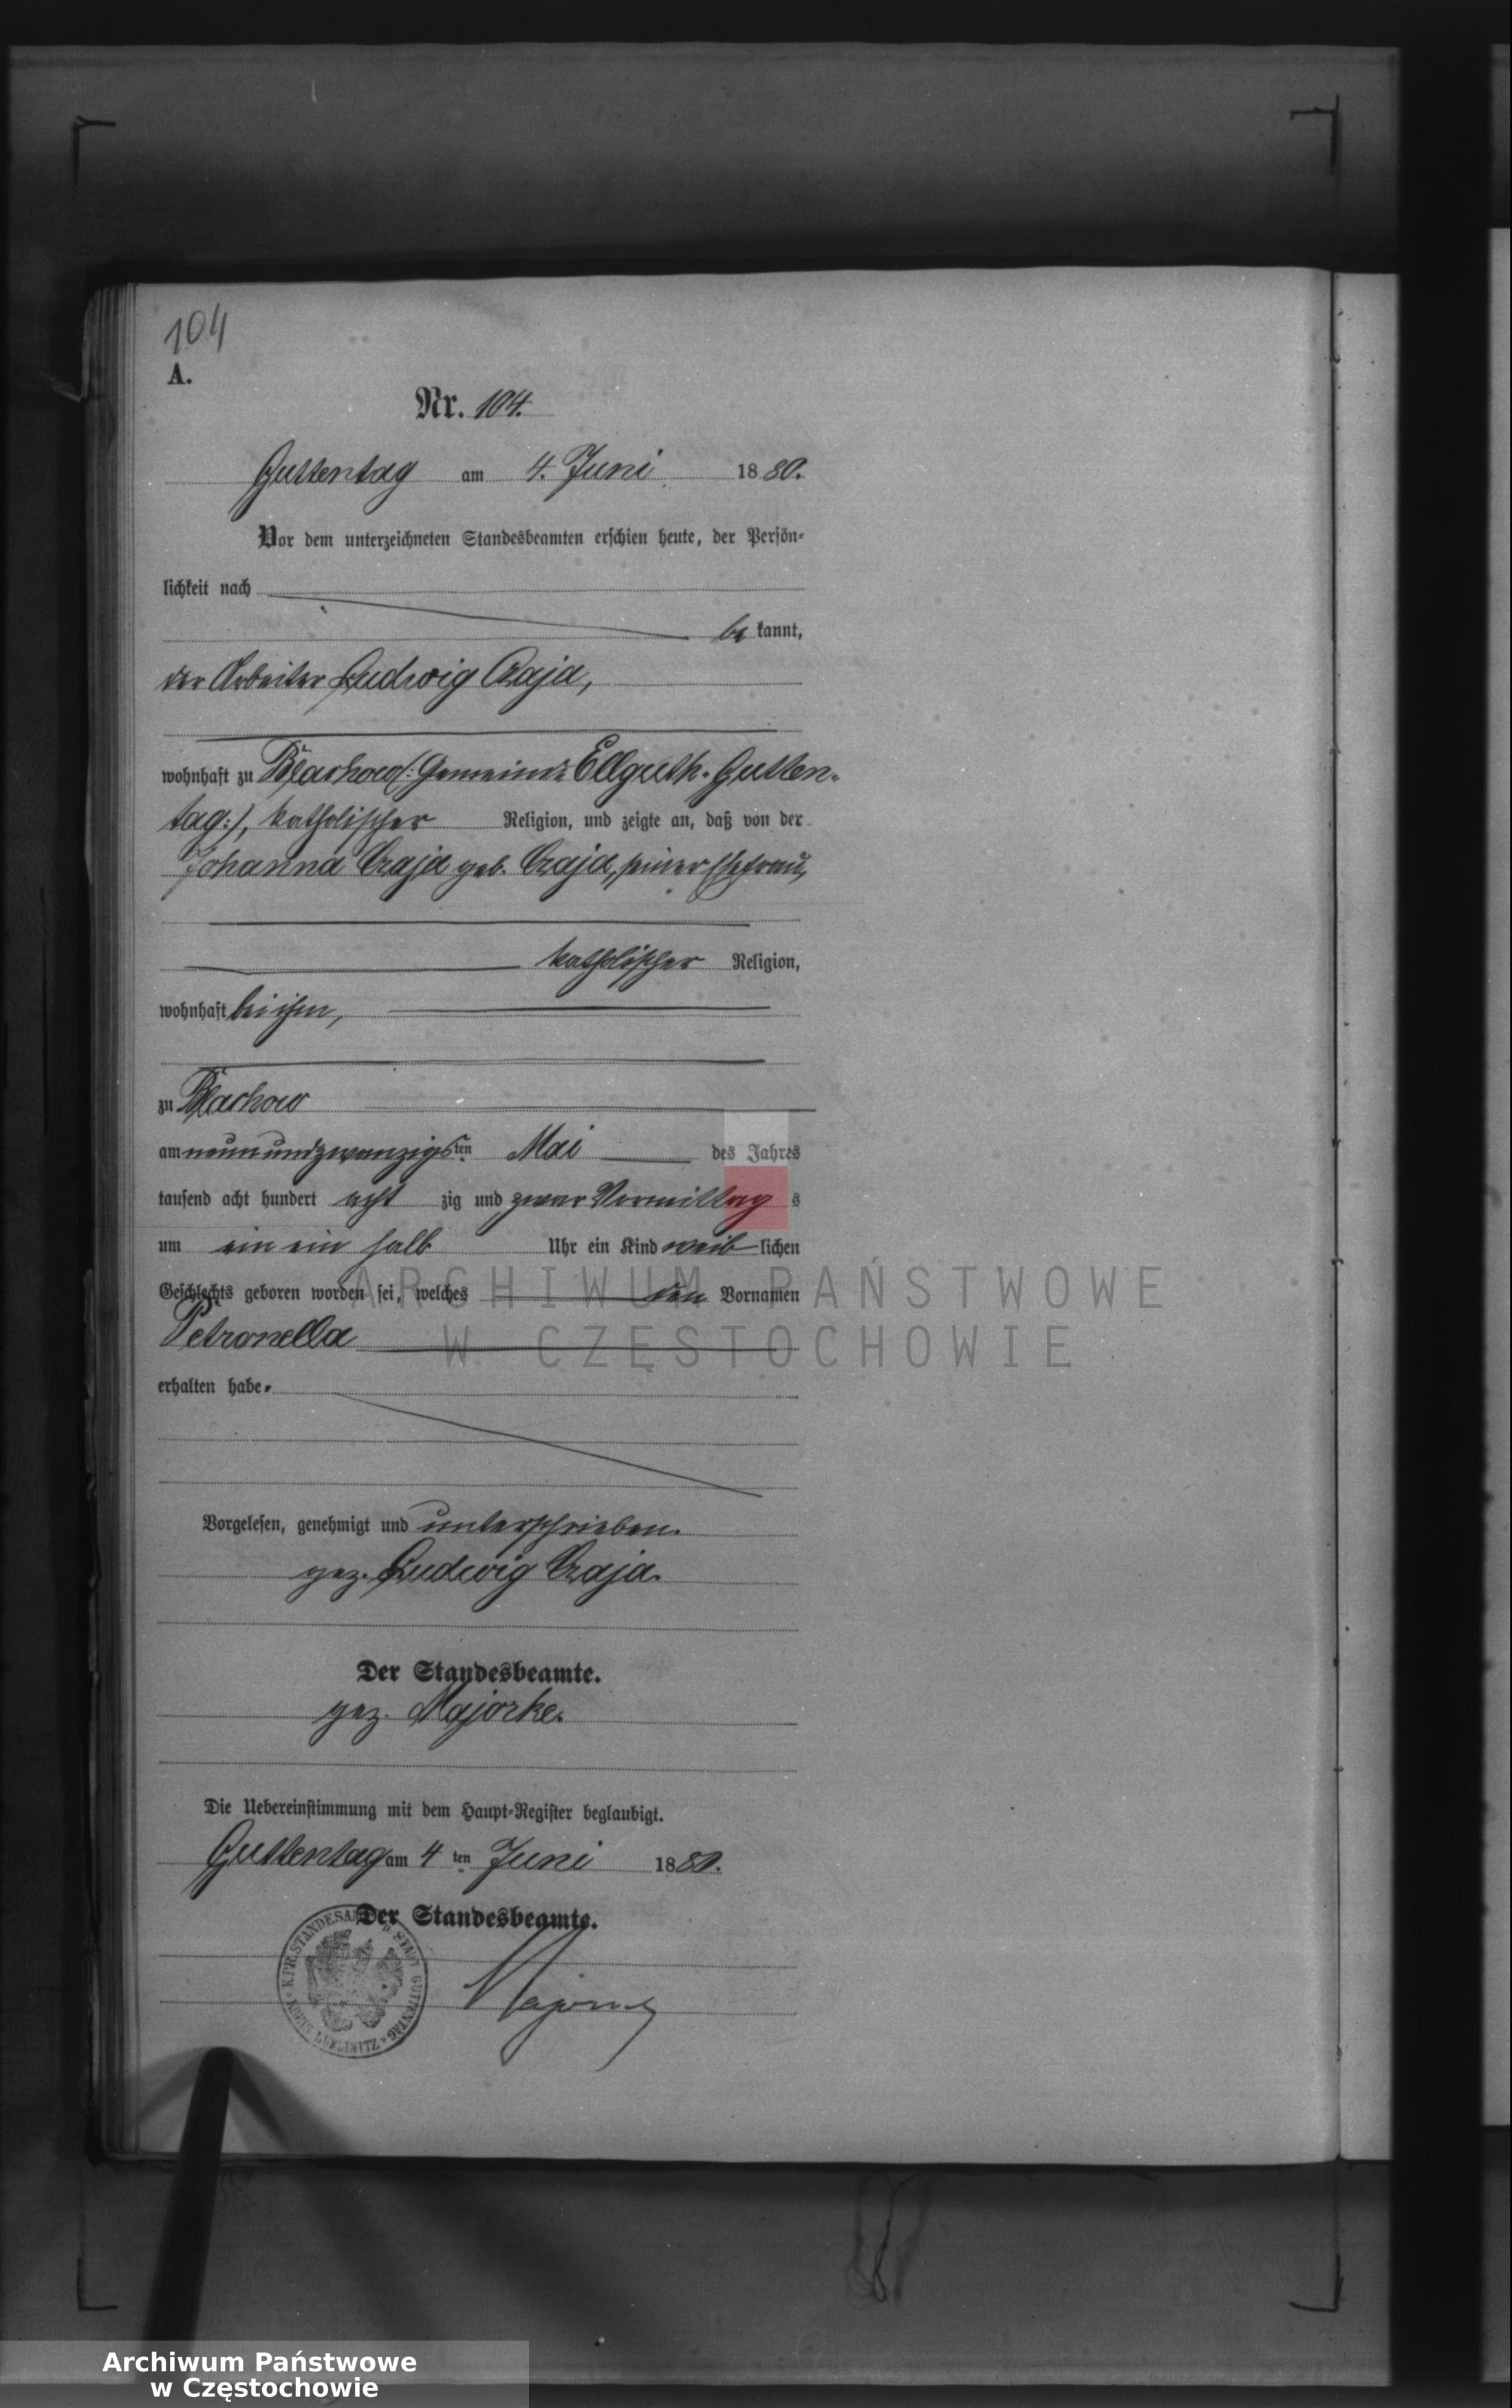 Skan z jednostki: Geburts - Neben Register des Königlich Preussischen Standesamts Guttentag im Kreise Lublinitz pro 1880.